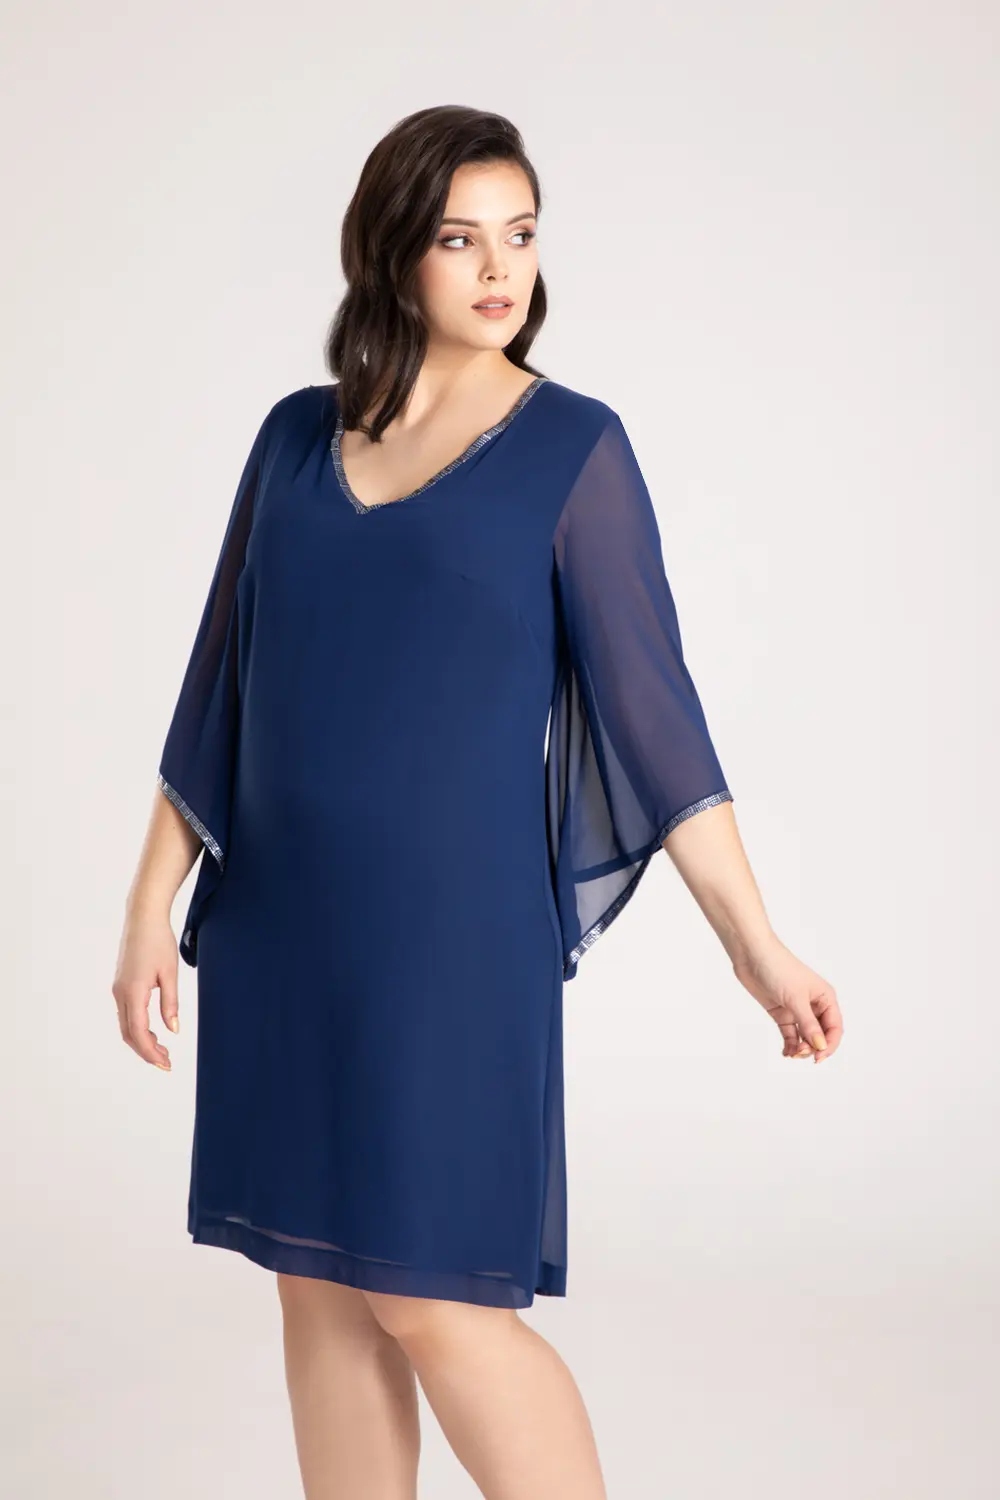 wizytowa sukienka szyfonowa niebieska plus size z szyfonu oversize na duże rozmiary marki Vito Vergelis